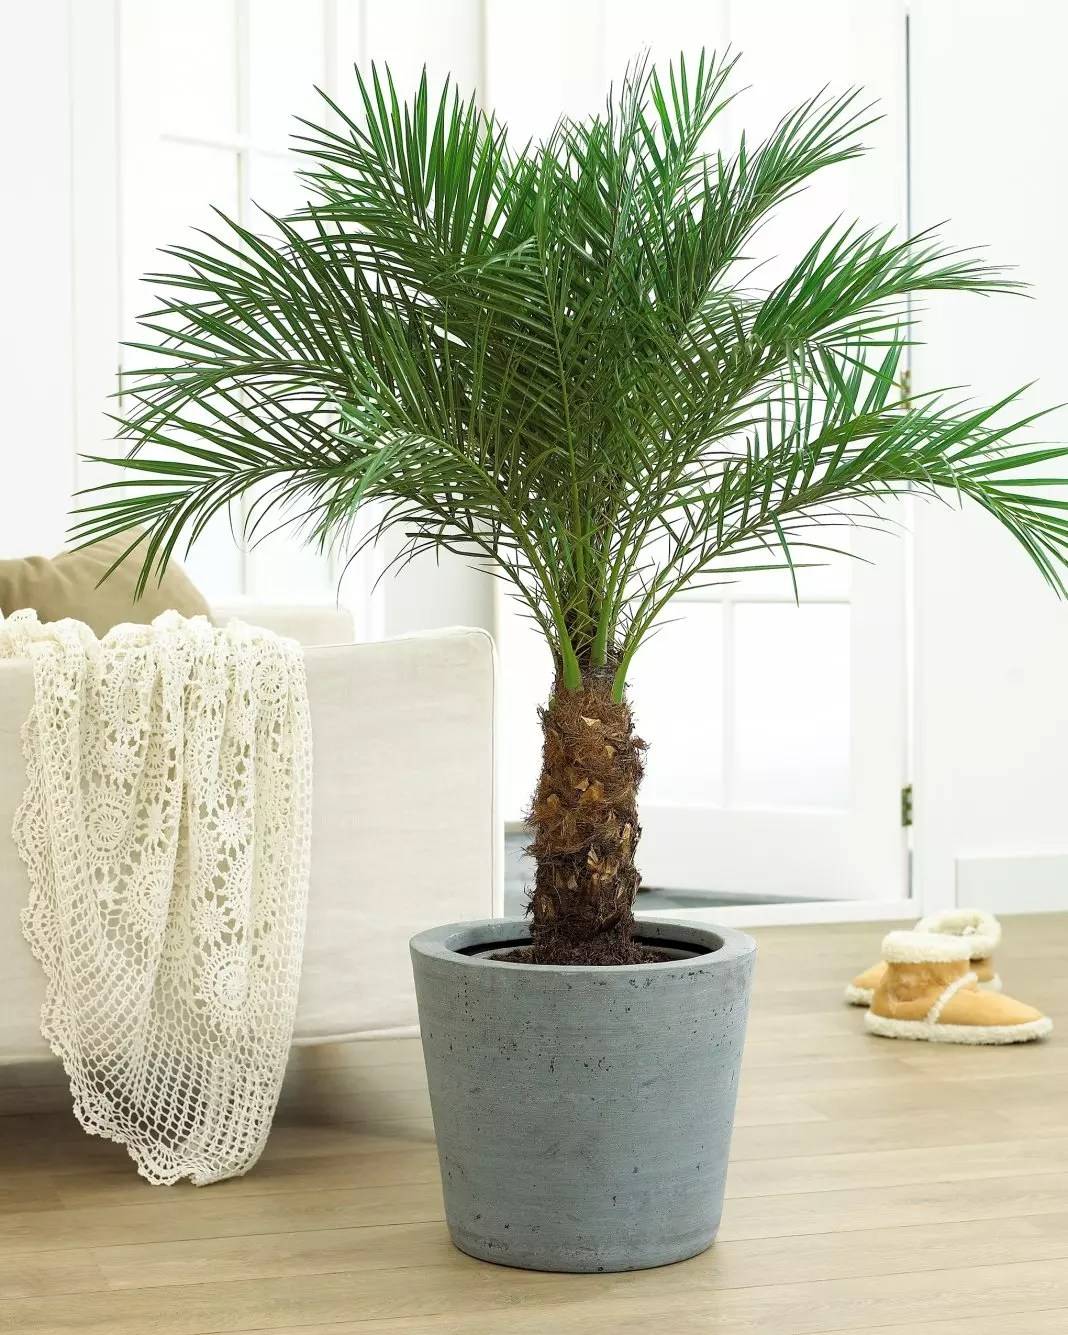 Комнатные пальмы: разновидности и правила ухода. как выбрать, вырастить и ухаживать за пальмами. эффектные варианты оформления интерьера